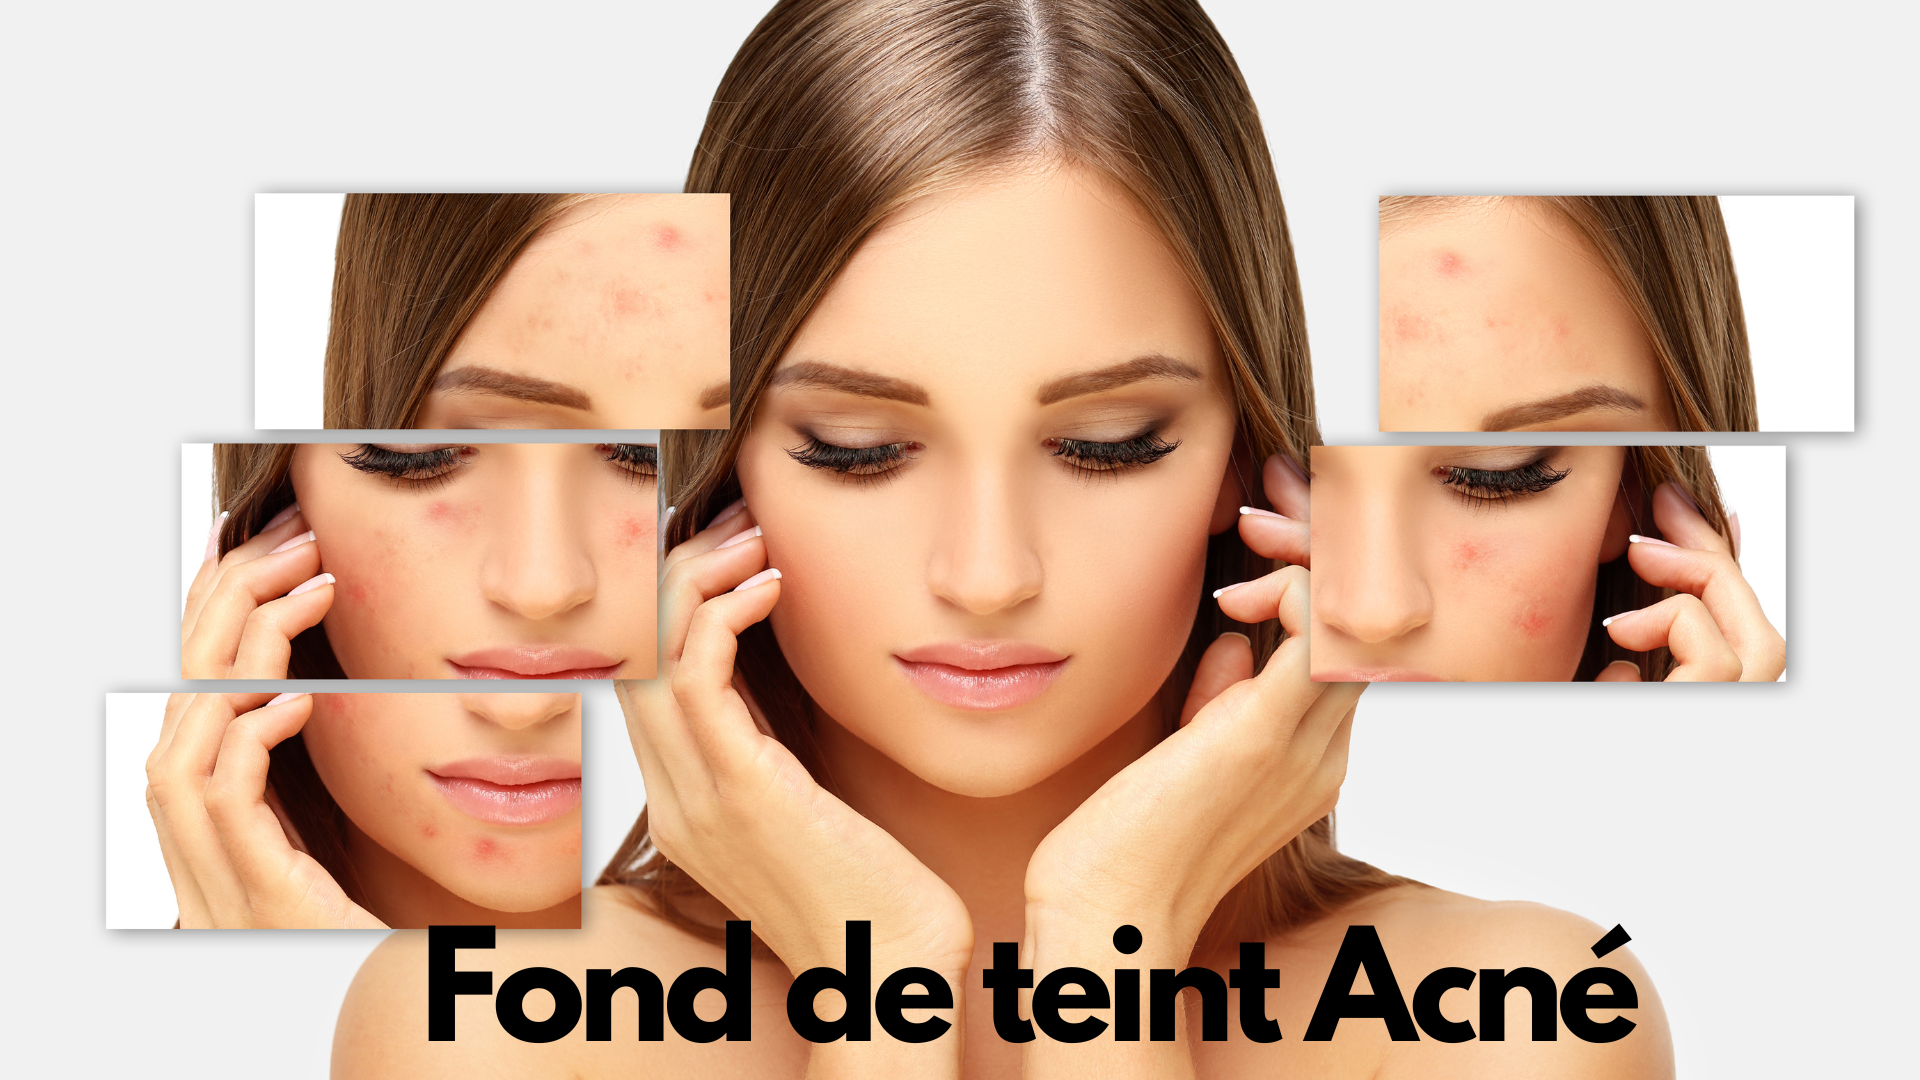 Fond de teint acné: quel fond de teint choisir quand on a une peau ...